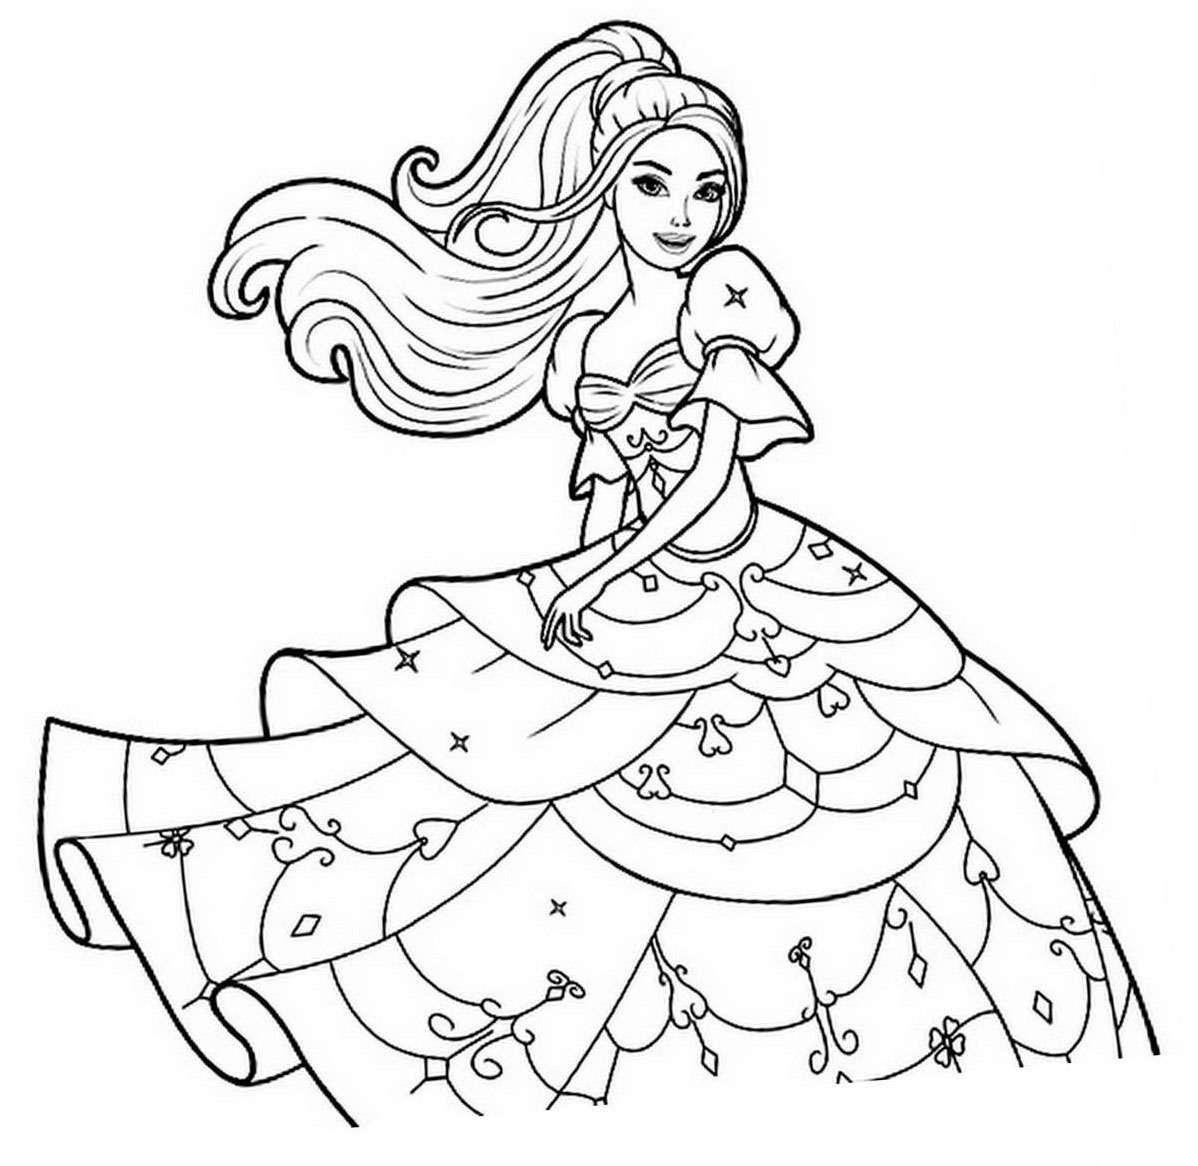 desenho-da-barbie-sereia-para-colorir-10 - Transtorno do Espectro Autista -  Tea.